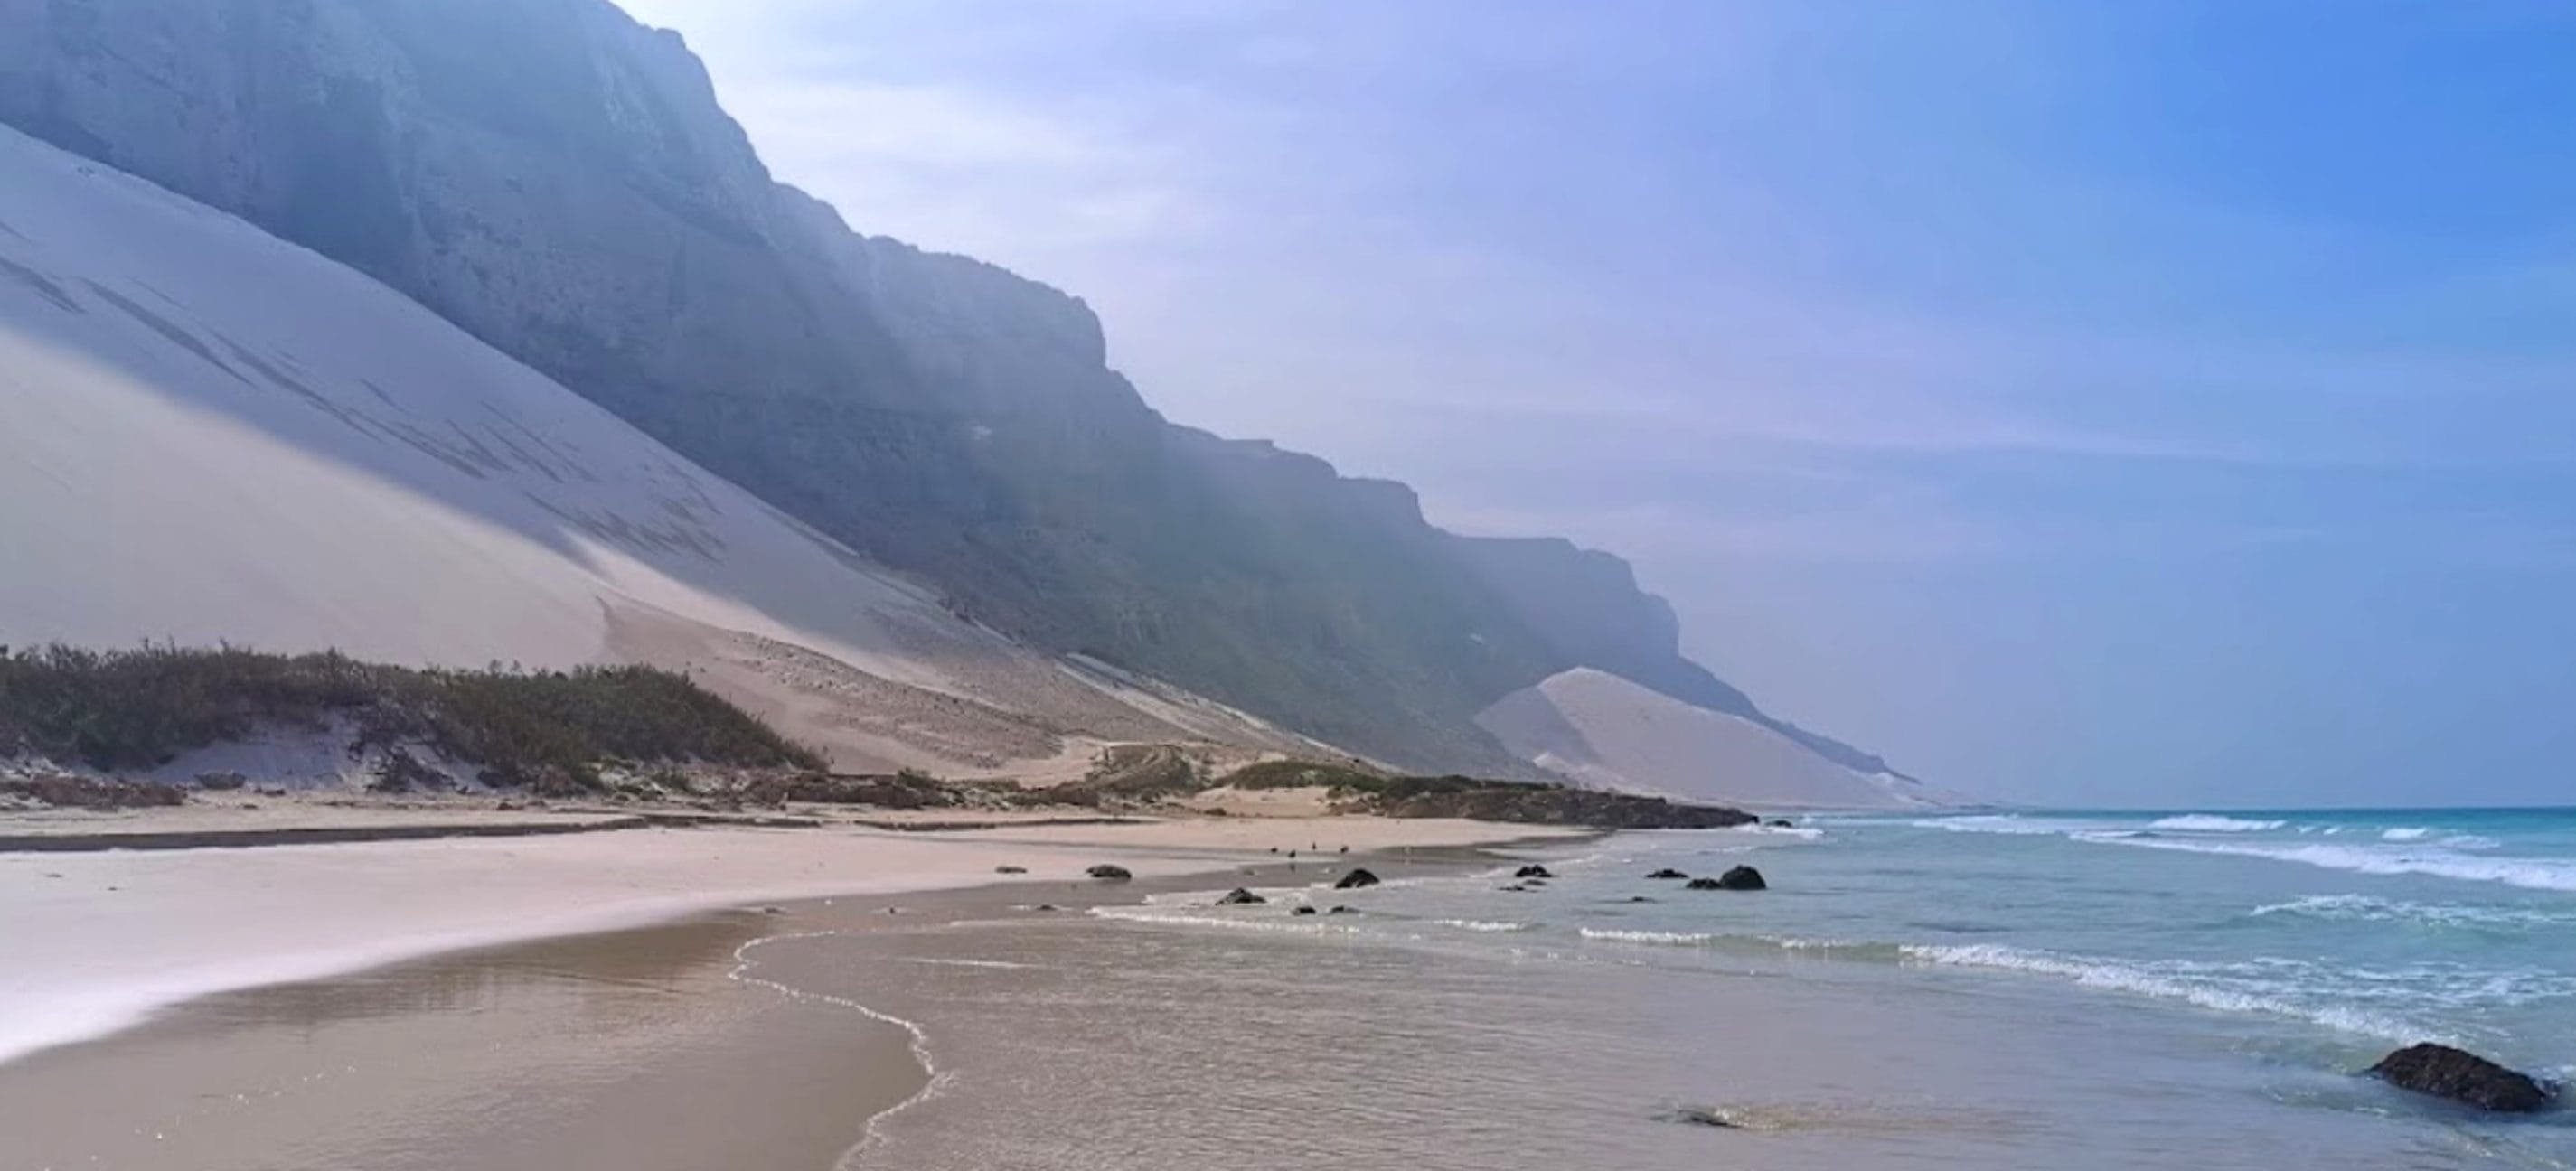 თეთრი ქვიშის დიუნები აჰრერის სანაპიროზე, სოკოტრა